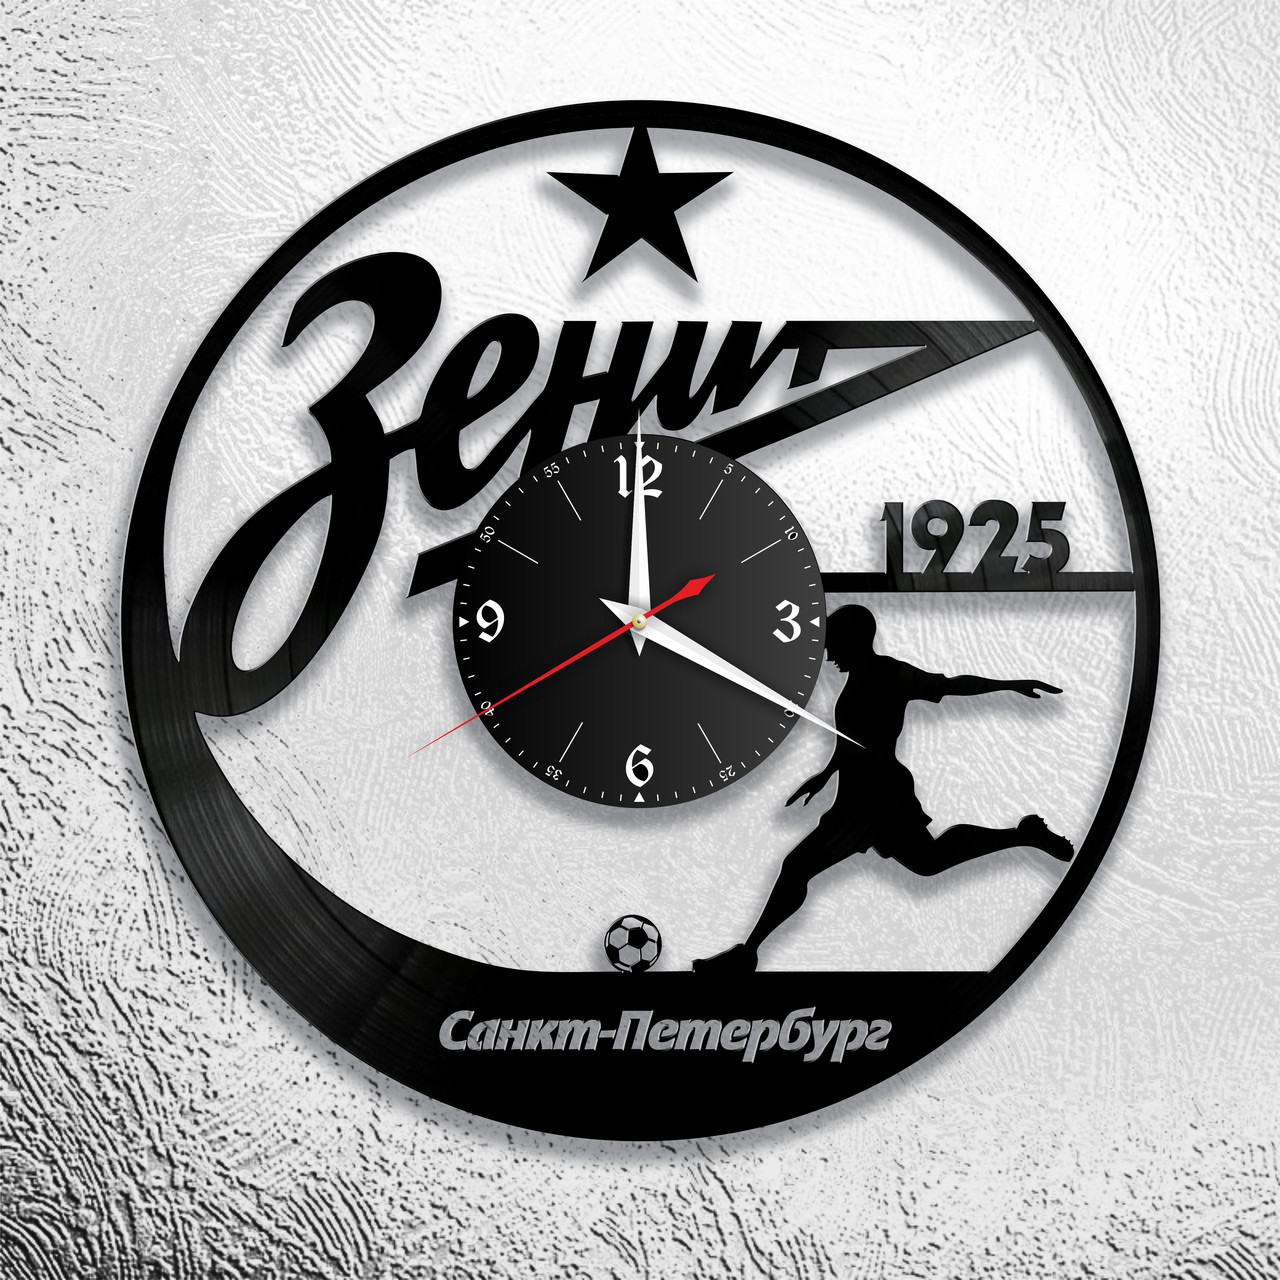 Оригинальные часы из виниловых пластинок  "Зенит" версия 1, фото 1